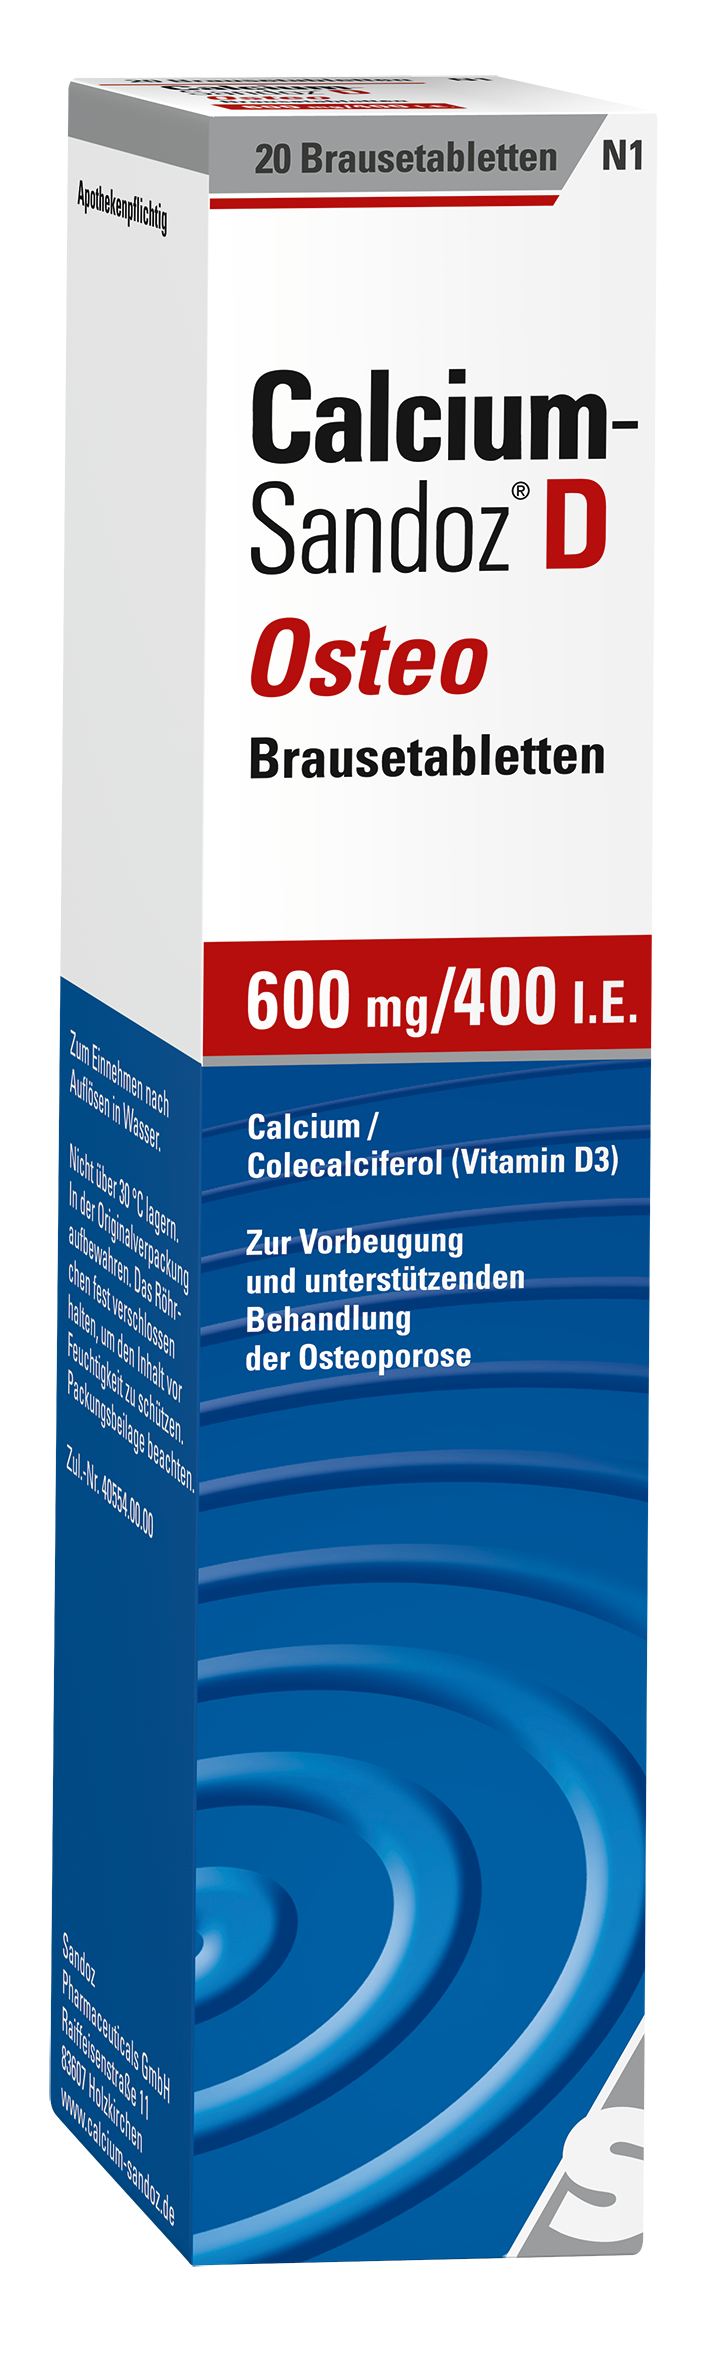 Calcium-Sandoz D Osteo Brausetabletten (20 Stk)